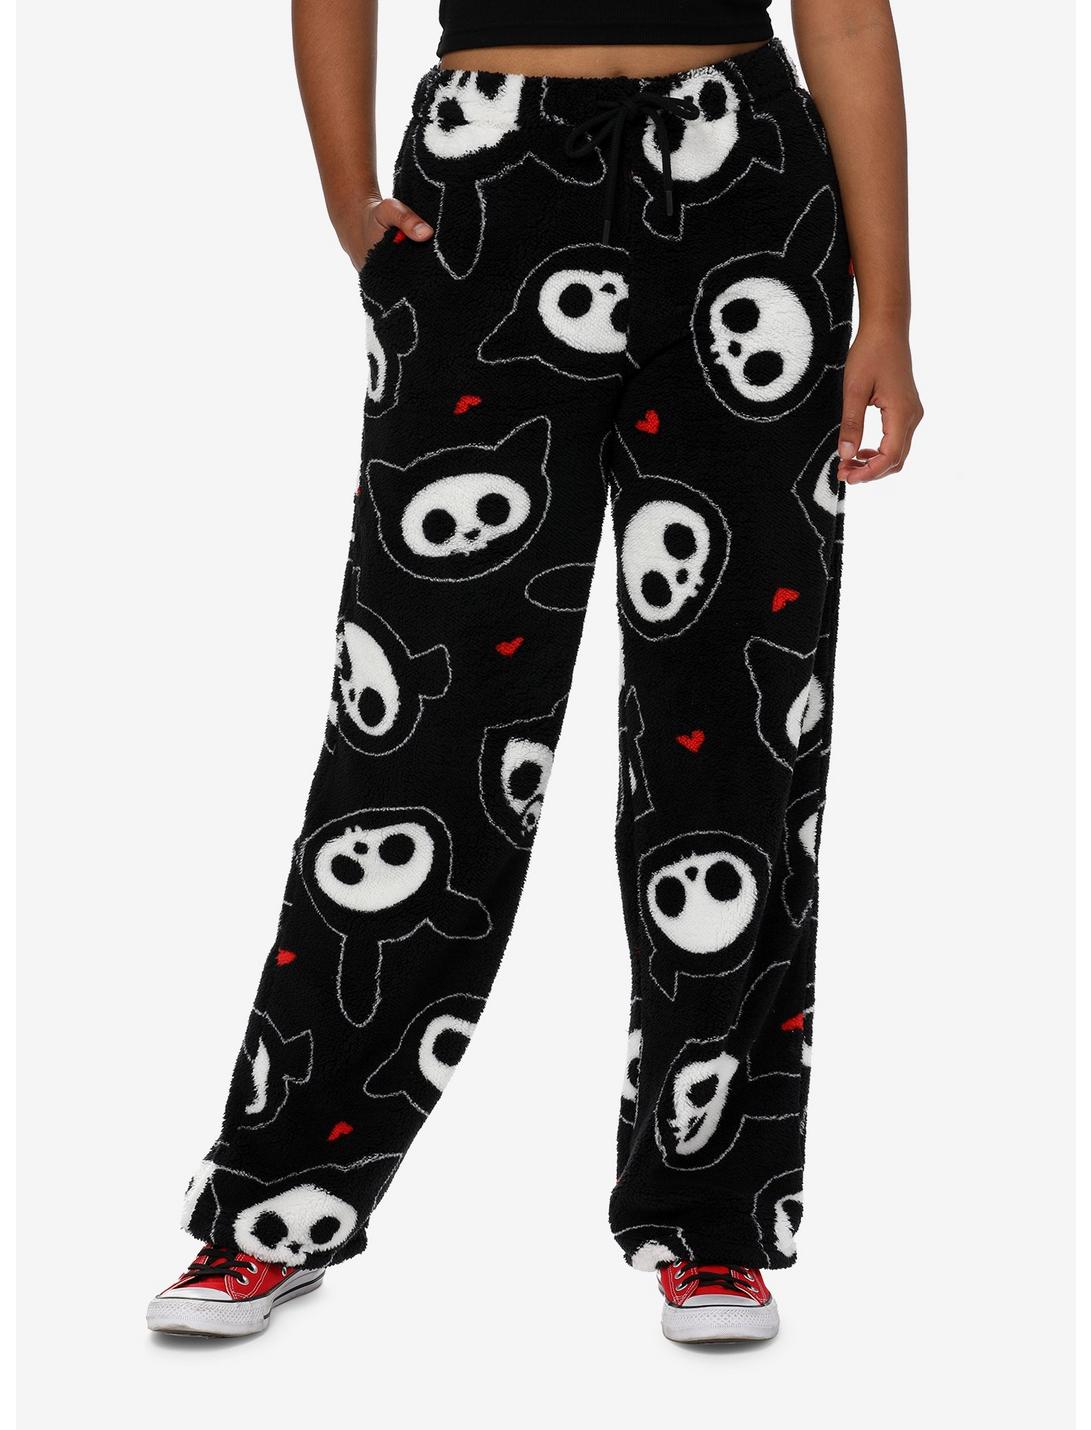 Skelanimals Character Plush Pajama Pants, BLACK, hi-res